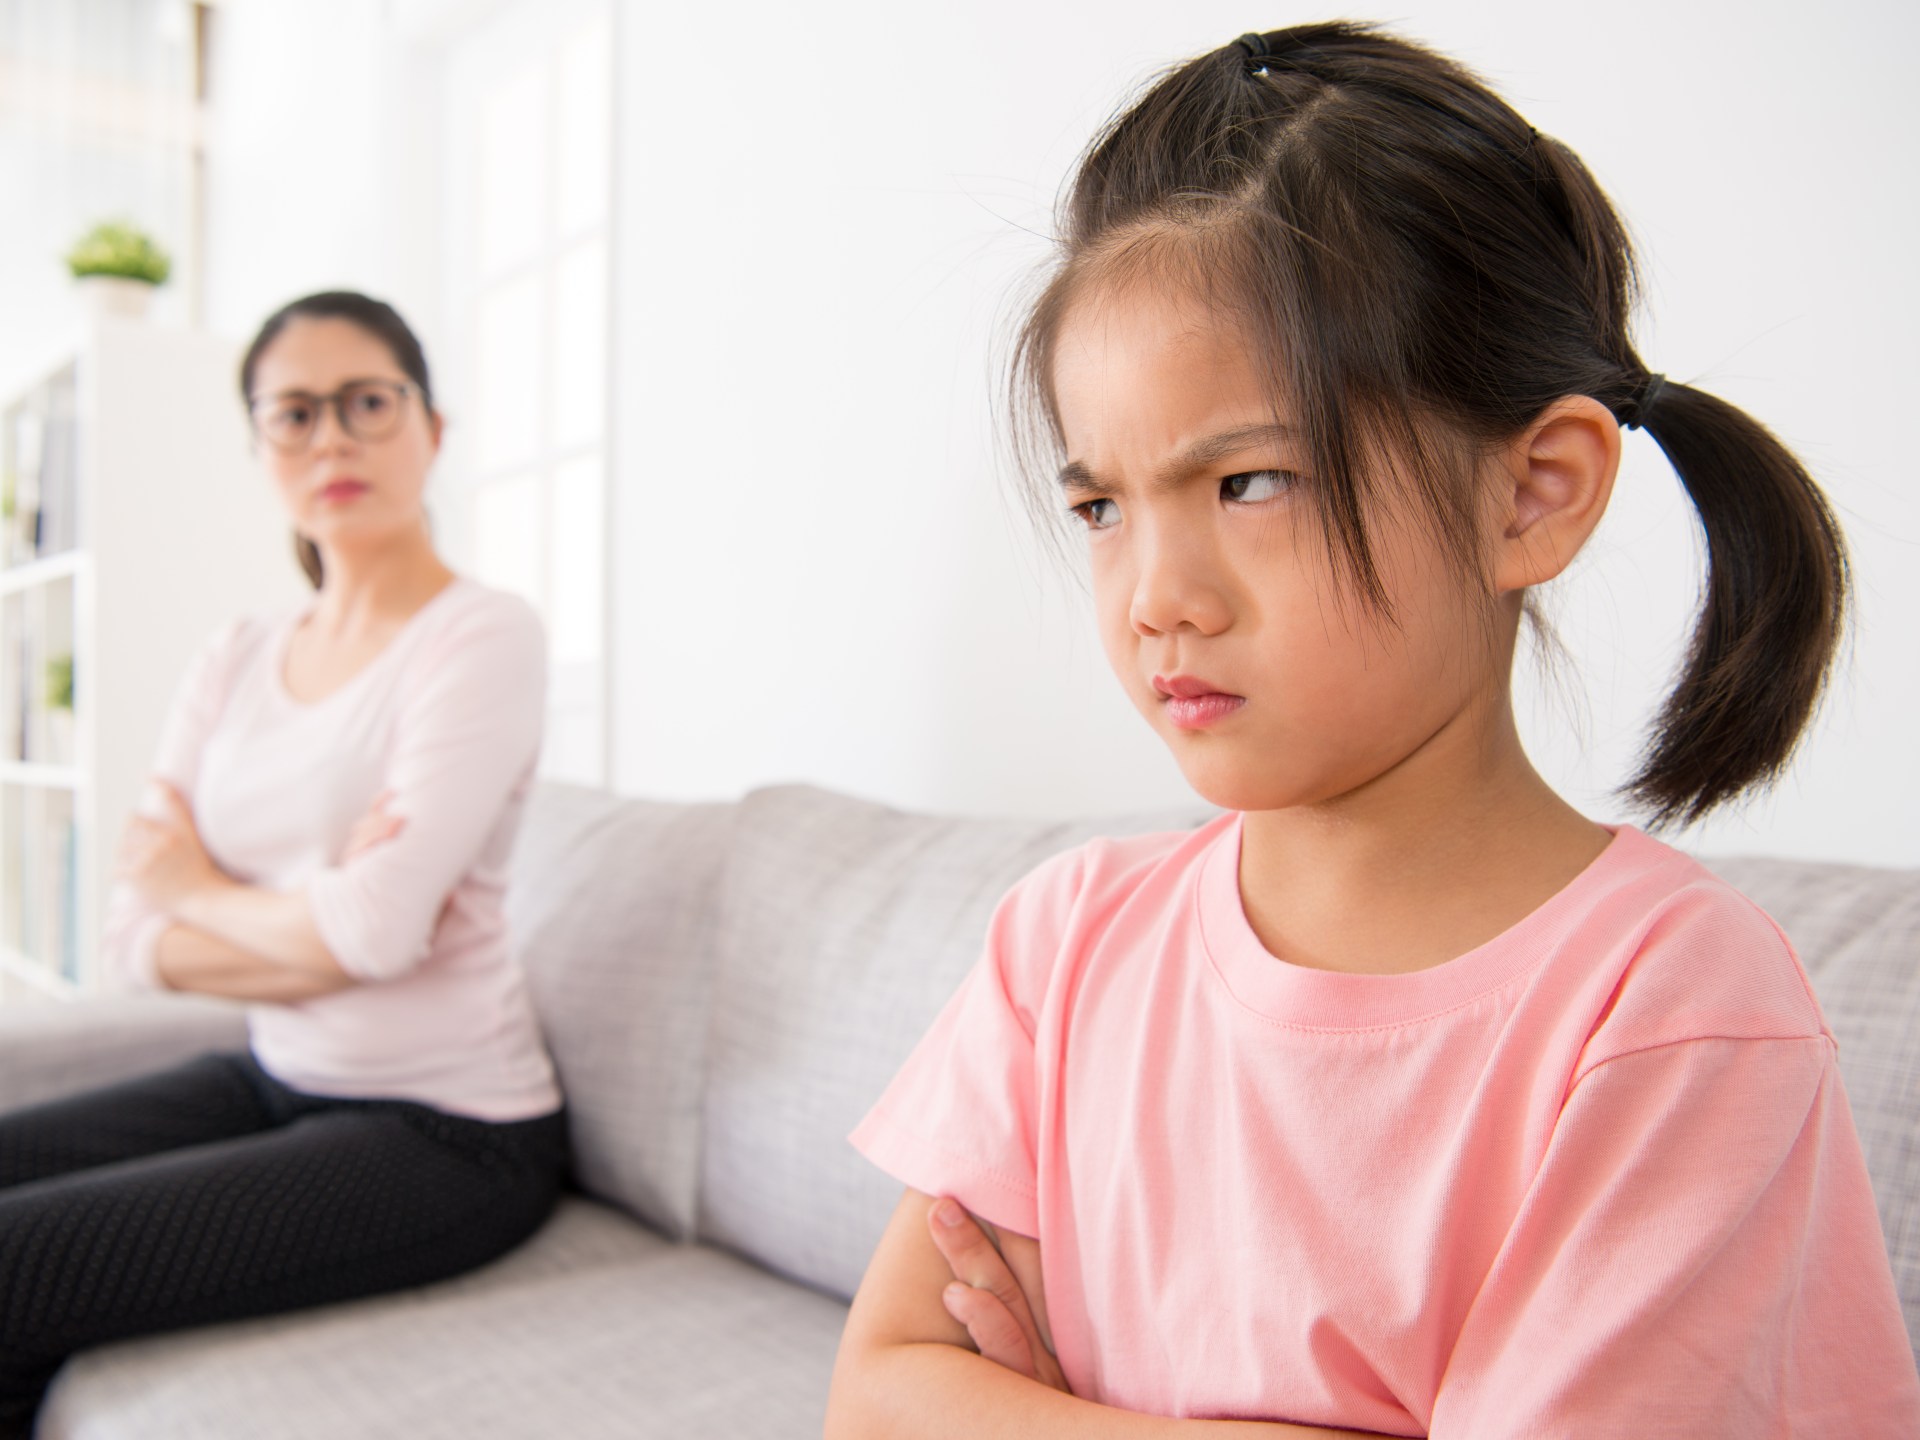 كيف تواجه غضب طفلك وتعلمه السيطرة على مشاعره؟ | مرأة – البوكس نيوز